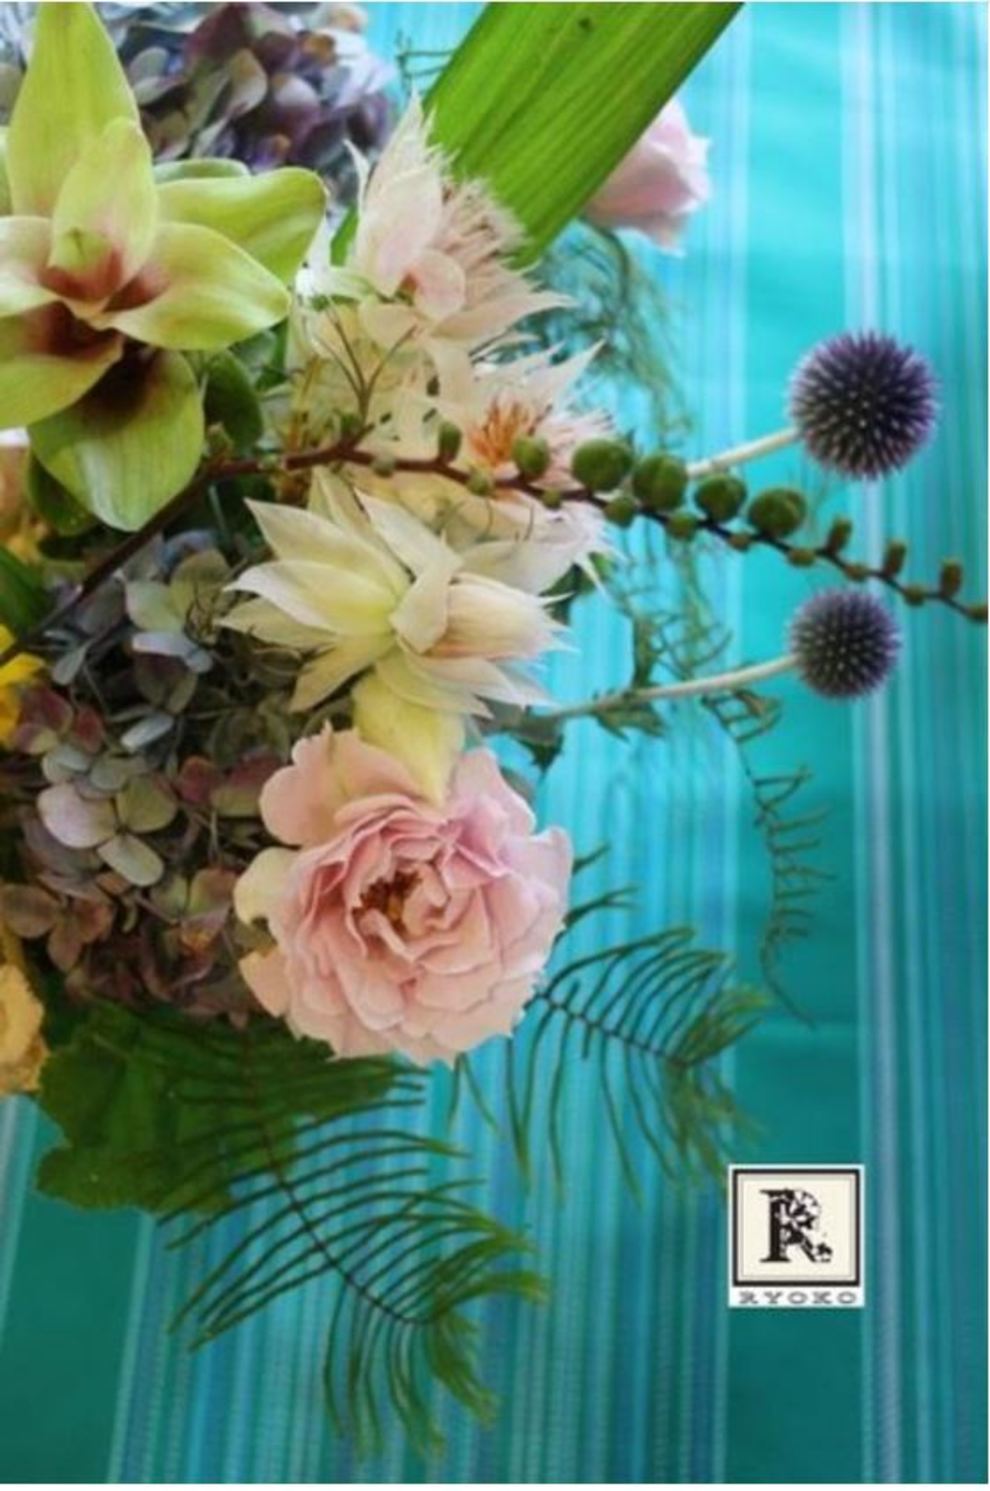 自由学園明日館公開講座 2015年度前期講座 「Decoration Florale―デコラシオン フローラル【芸術文化】」~明日館食堂で花を活ける